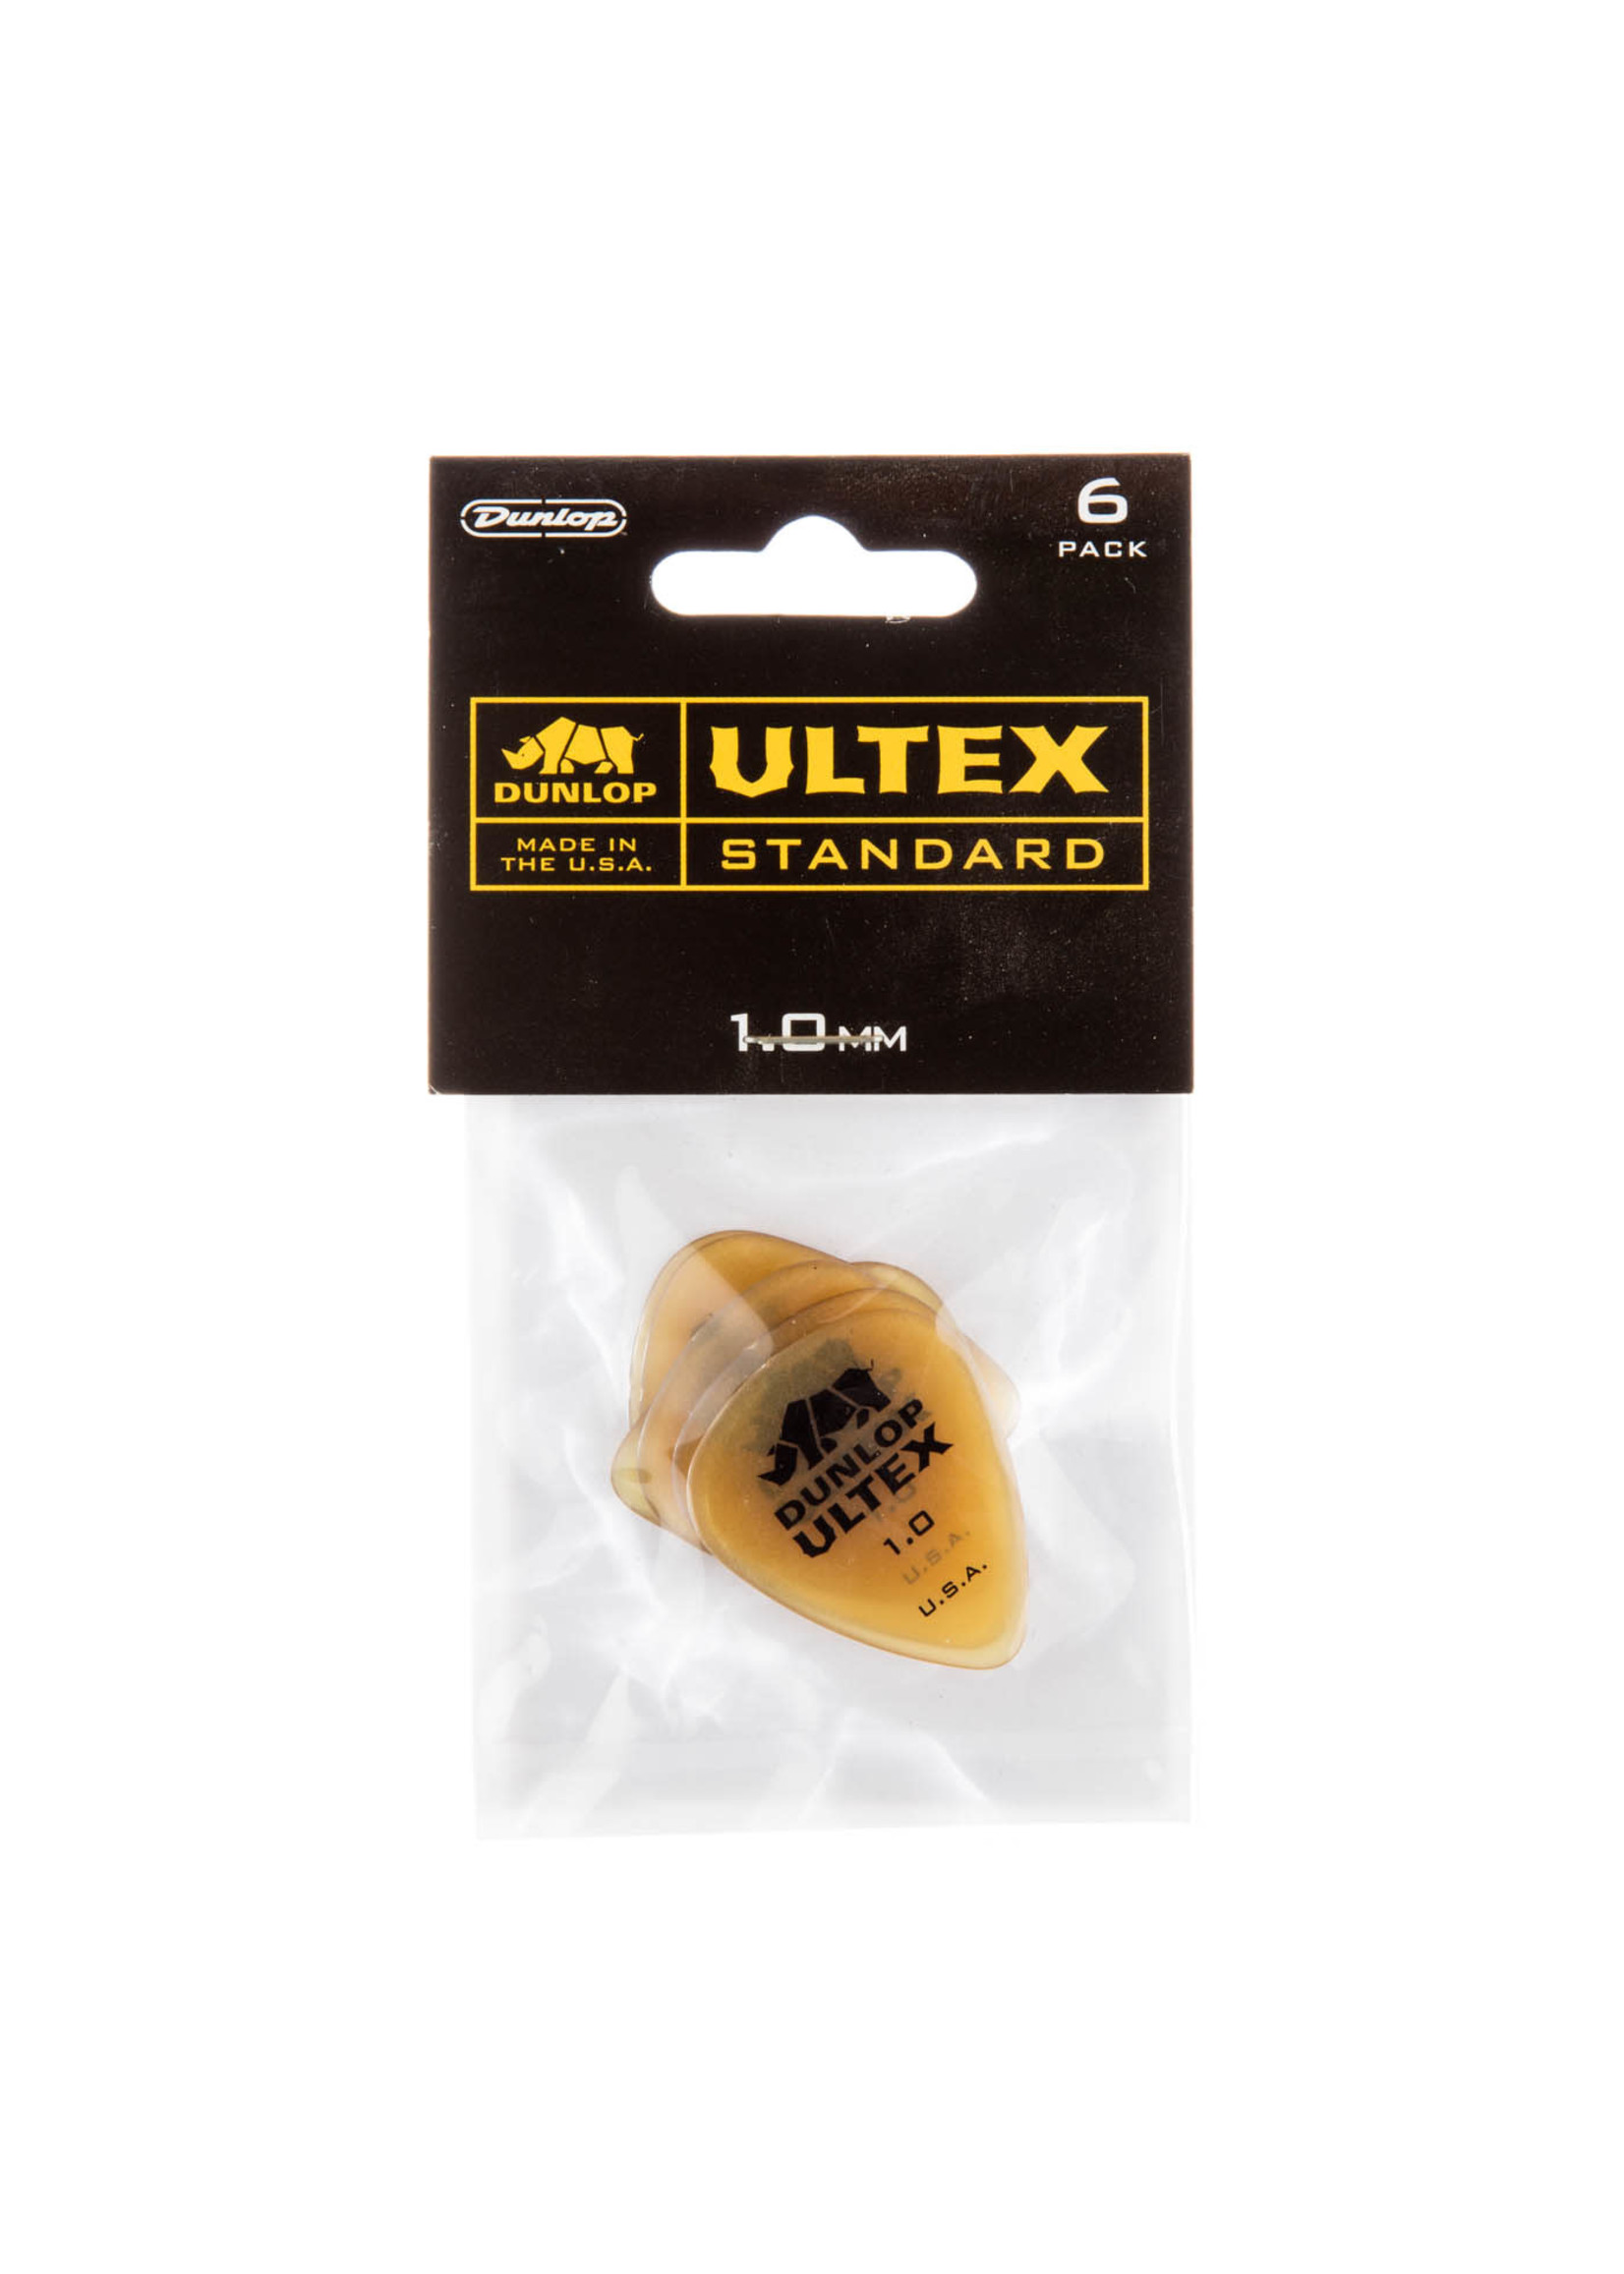 Dunlop Dunlop Ultex Standard Pick Pack 1.0mm